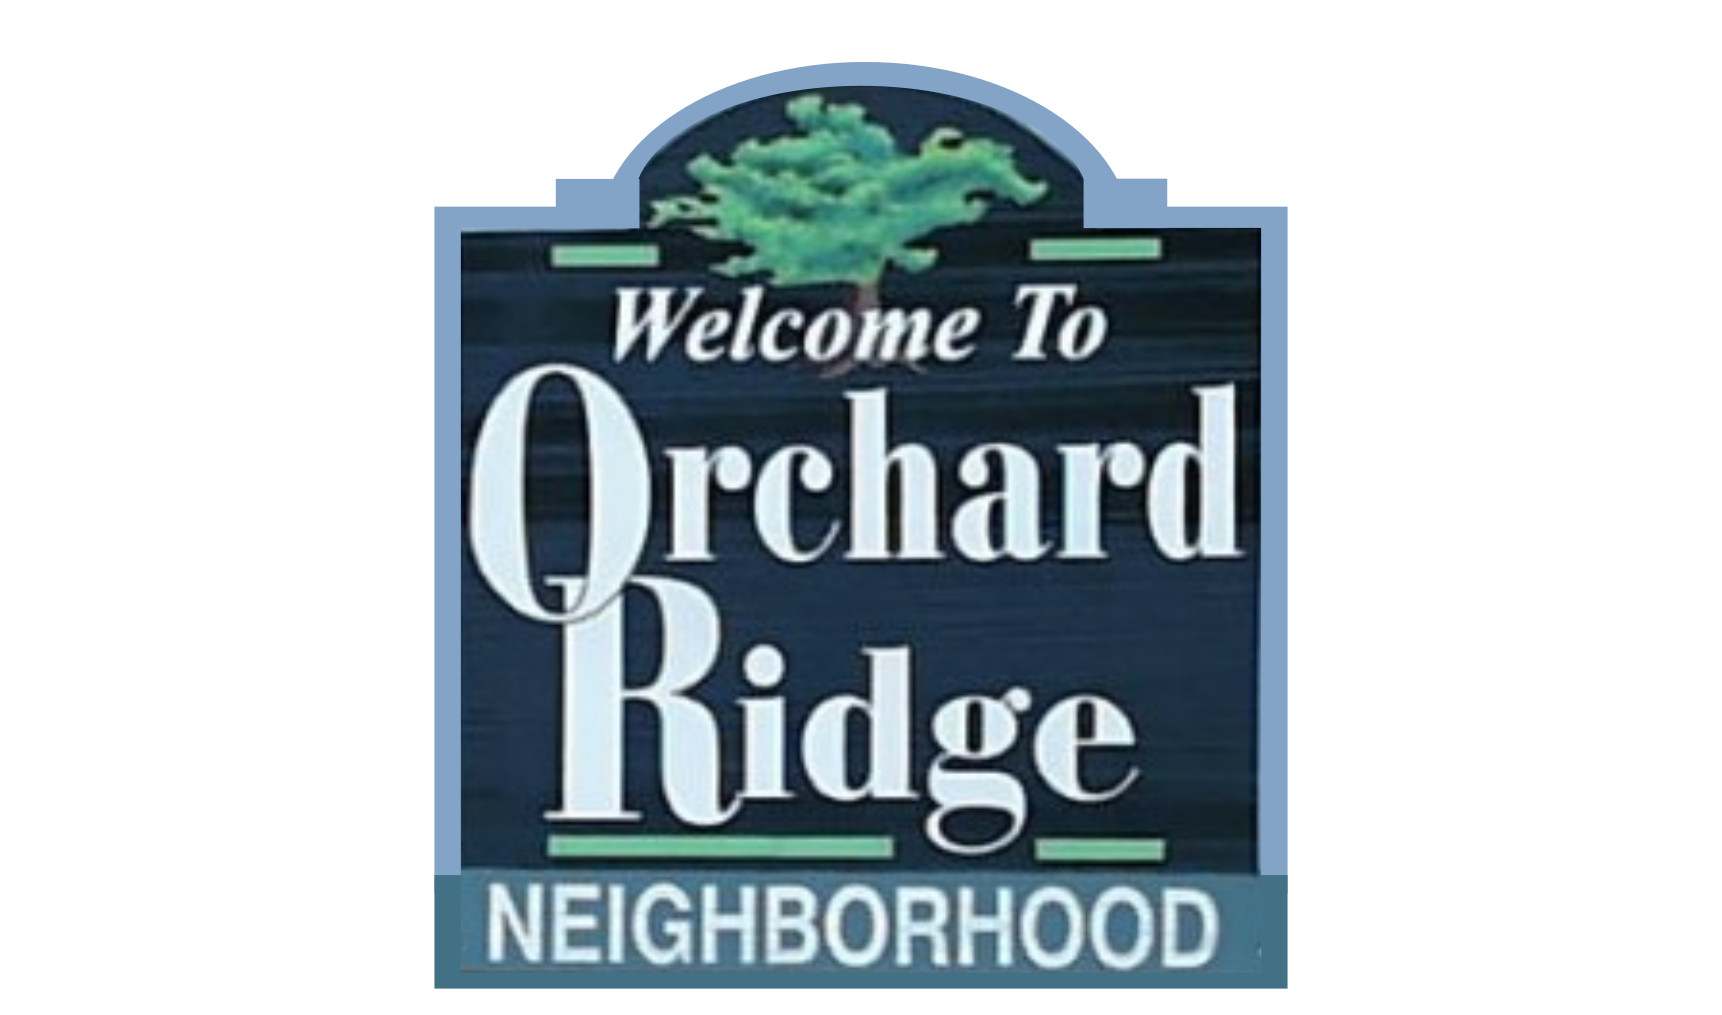 Welcome to the Orchard Ridge Neighborhood